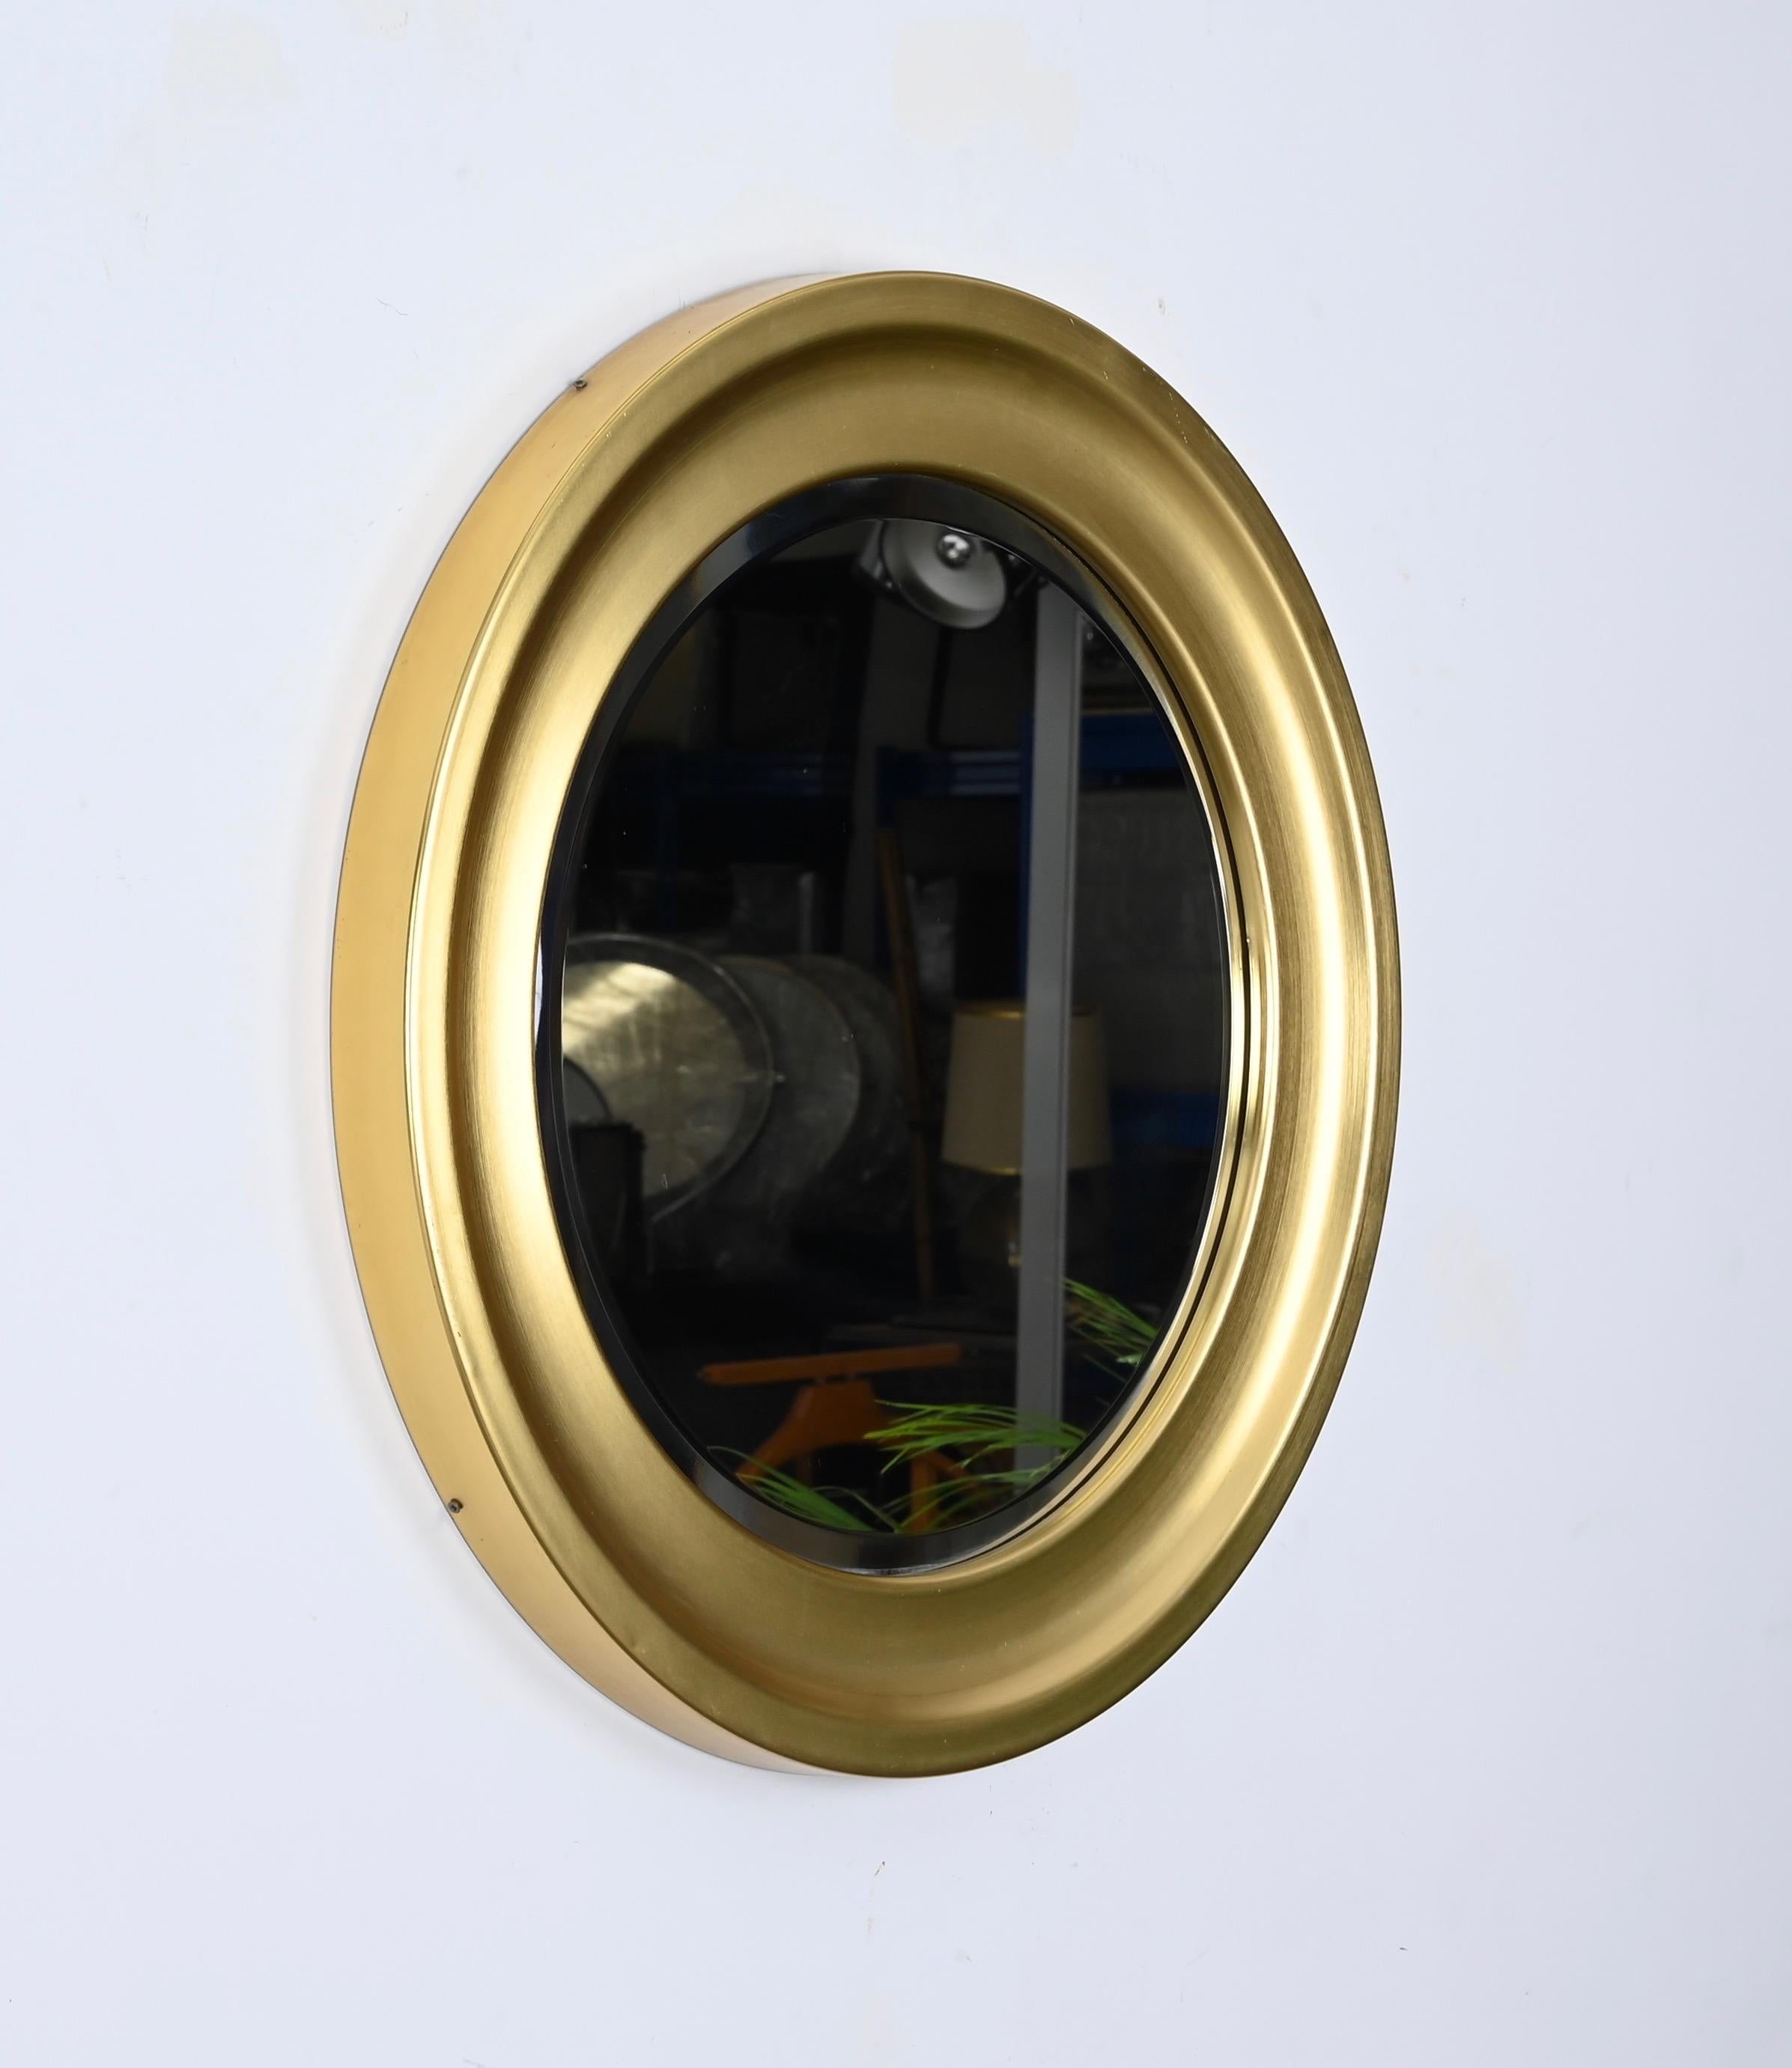 Prächtiger modernistischer Spiegel, entworfen von Sergio Mazza für Artemide in Italien in den 1960er Jahren.  

Diese seltene Version des Spiegels hat einen prächtigen runden Rahmen aus goldenem Metall mit einem runden, abgeschrägten Spiegel. 

Ein